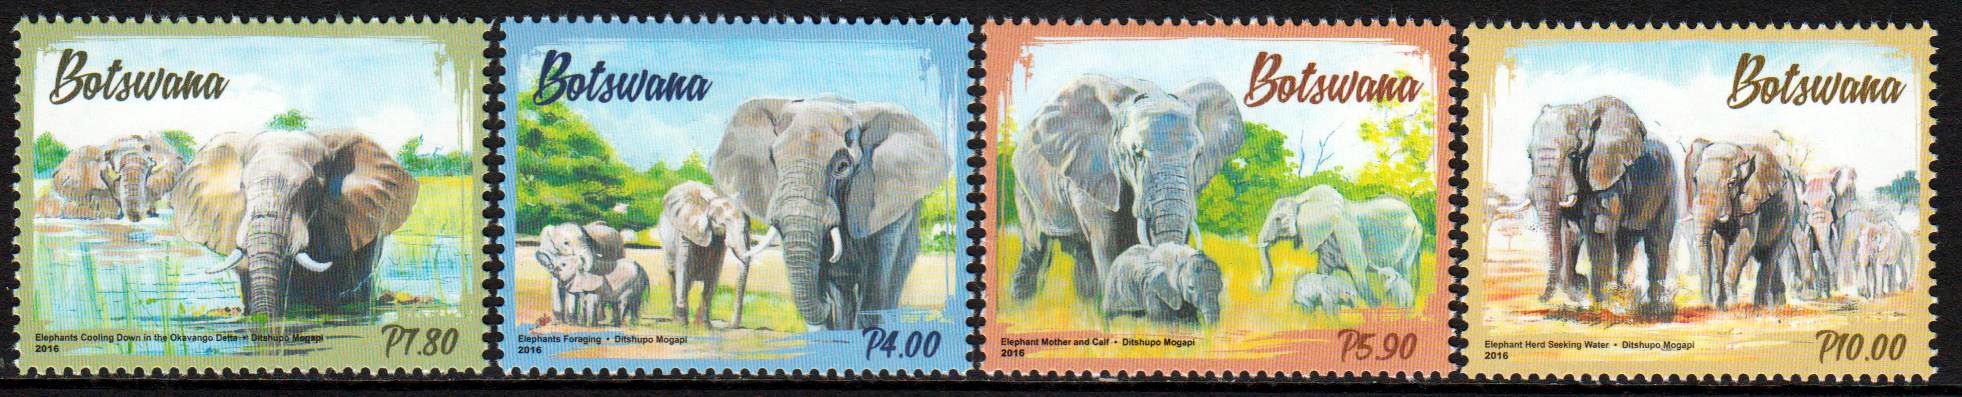 Elefanten 2016